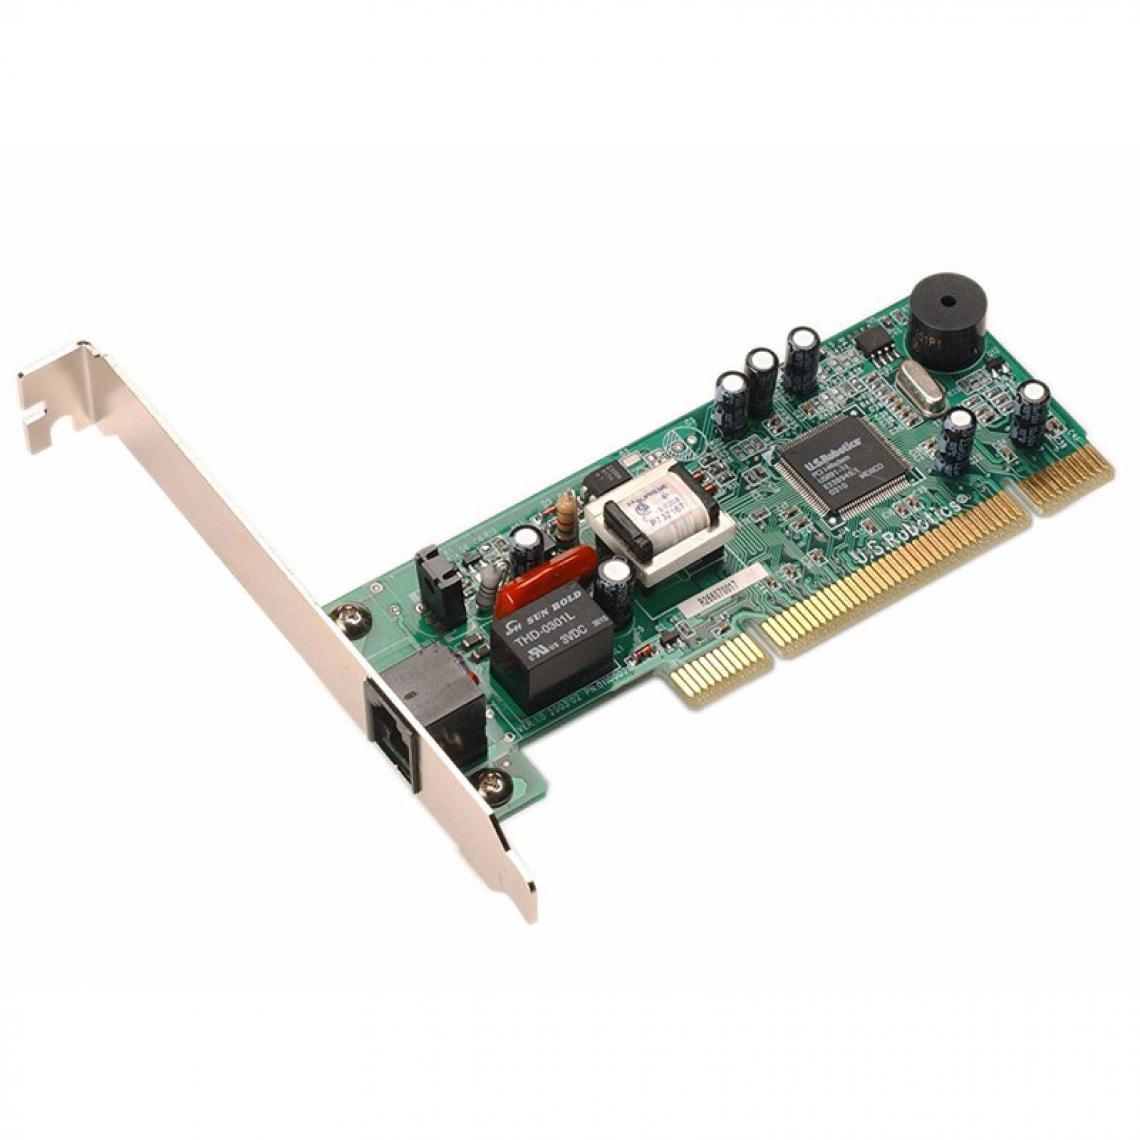 Us Robotics - Carte Modem 56K USRobotics USR805671 M68P160237 DATA FAX PCI Equerre Longue - Modem / Routeur / Points d'accès